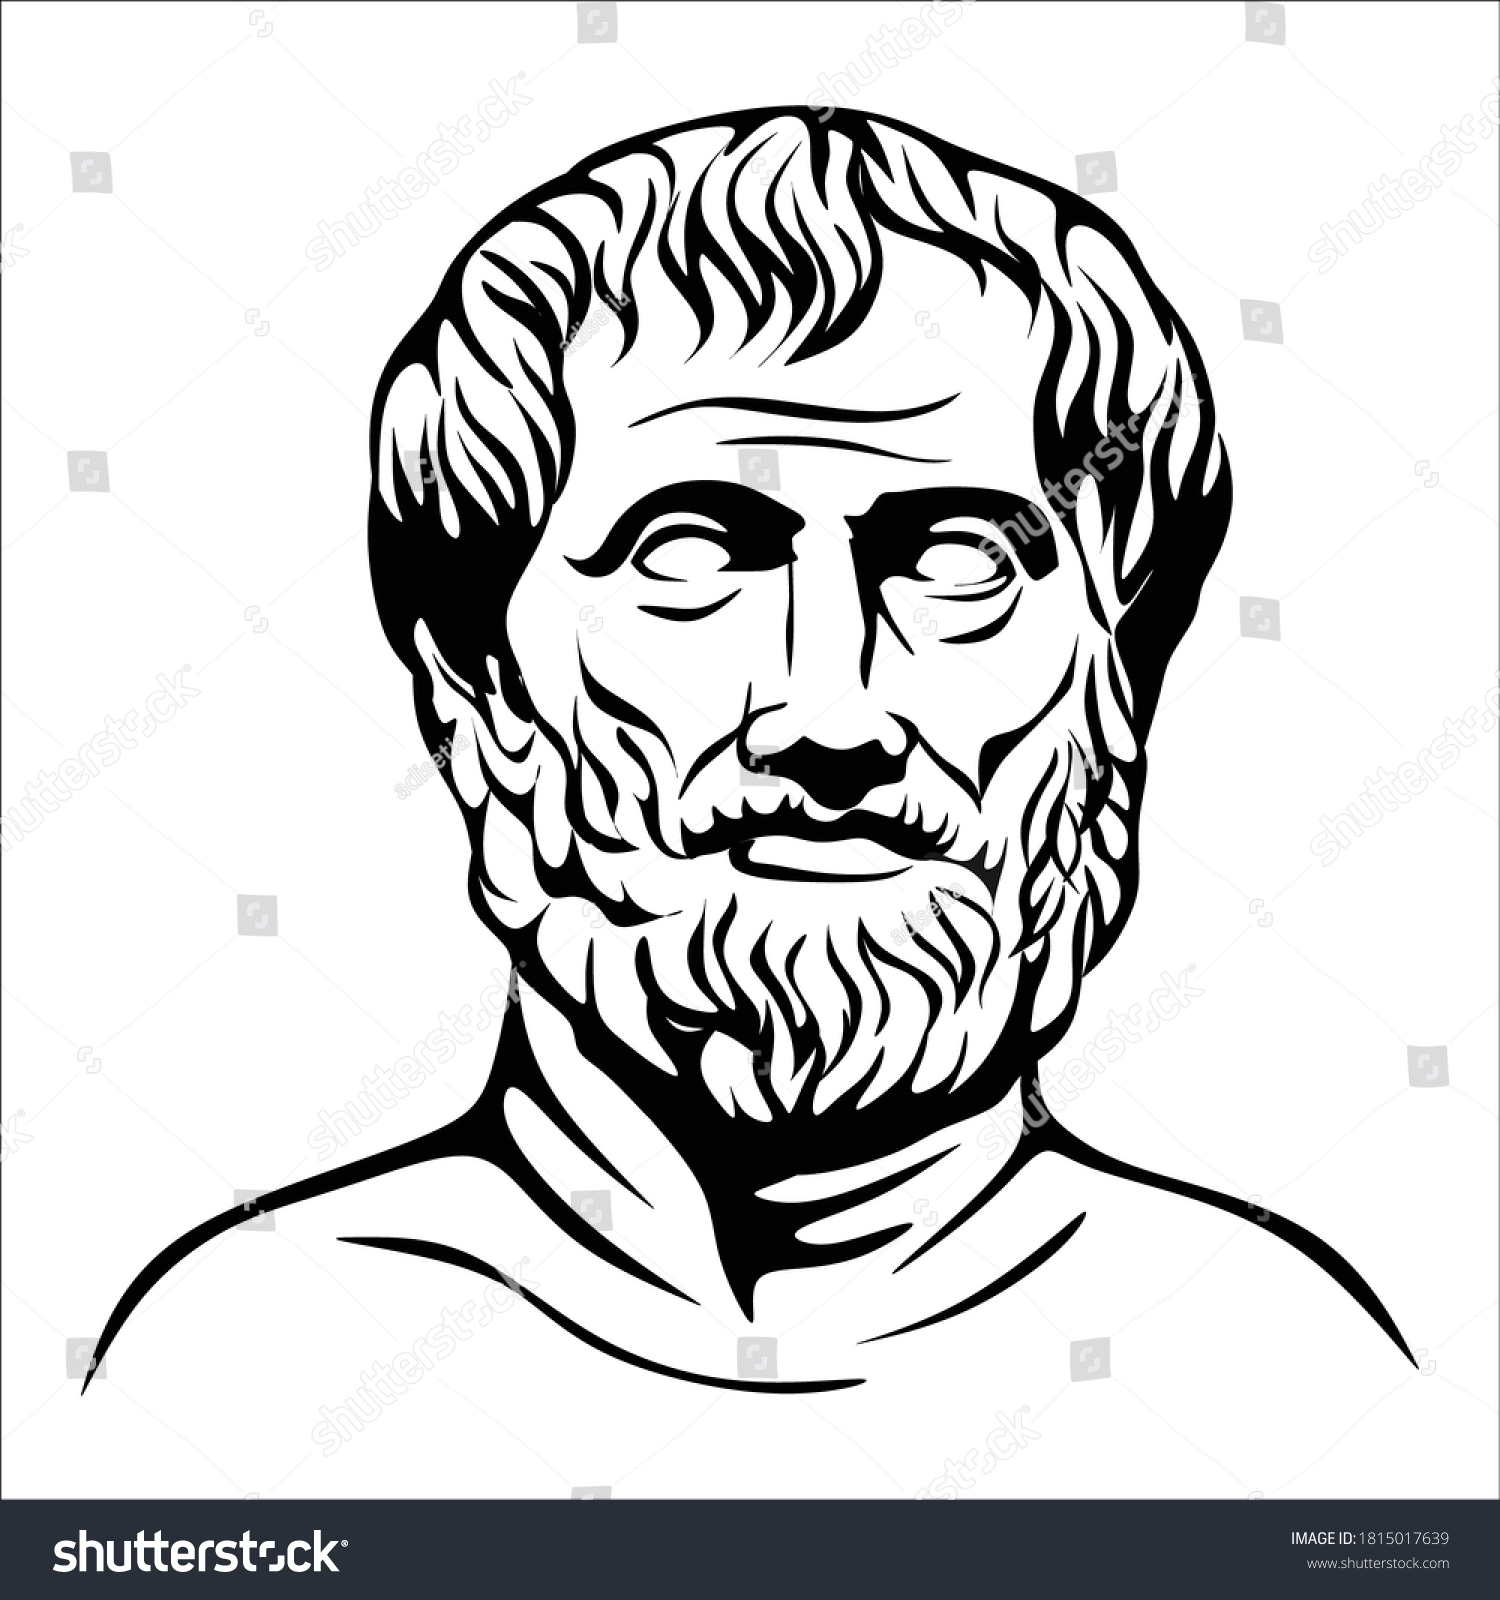 Аристотель черно белая картинка печать